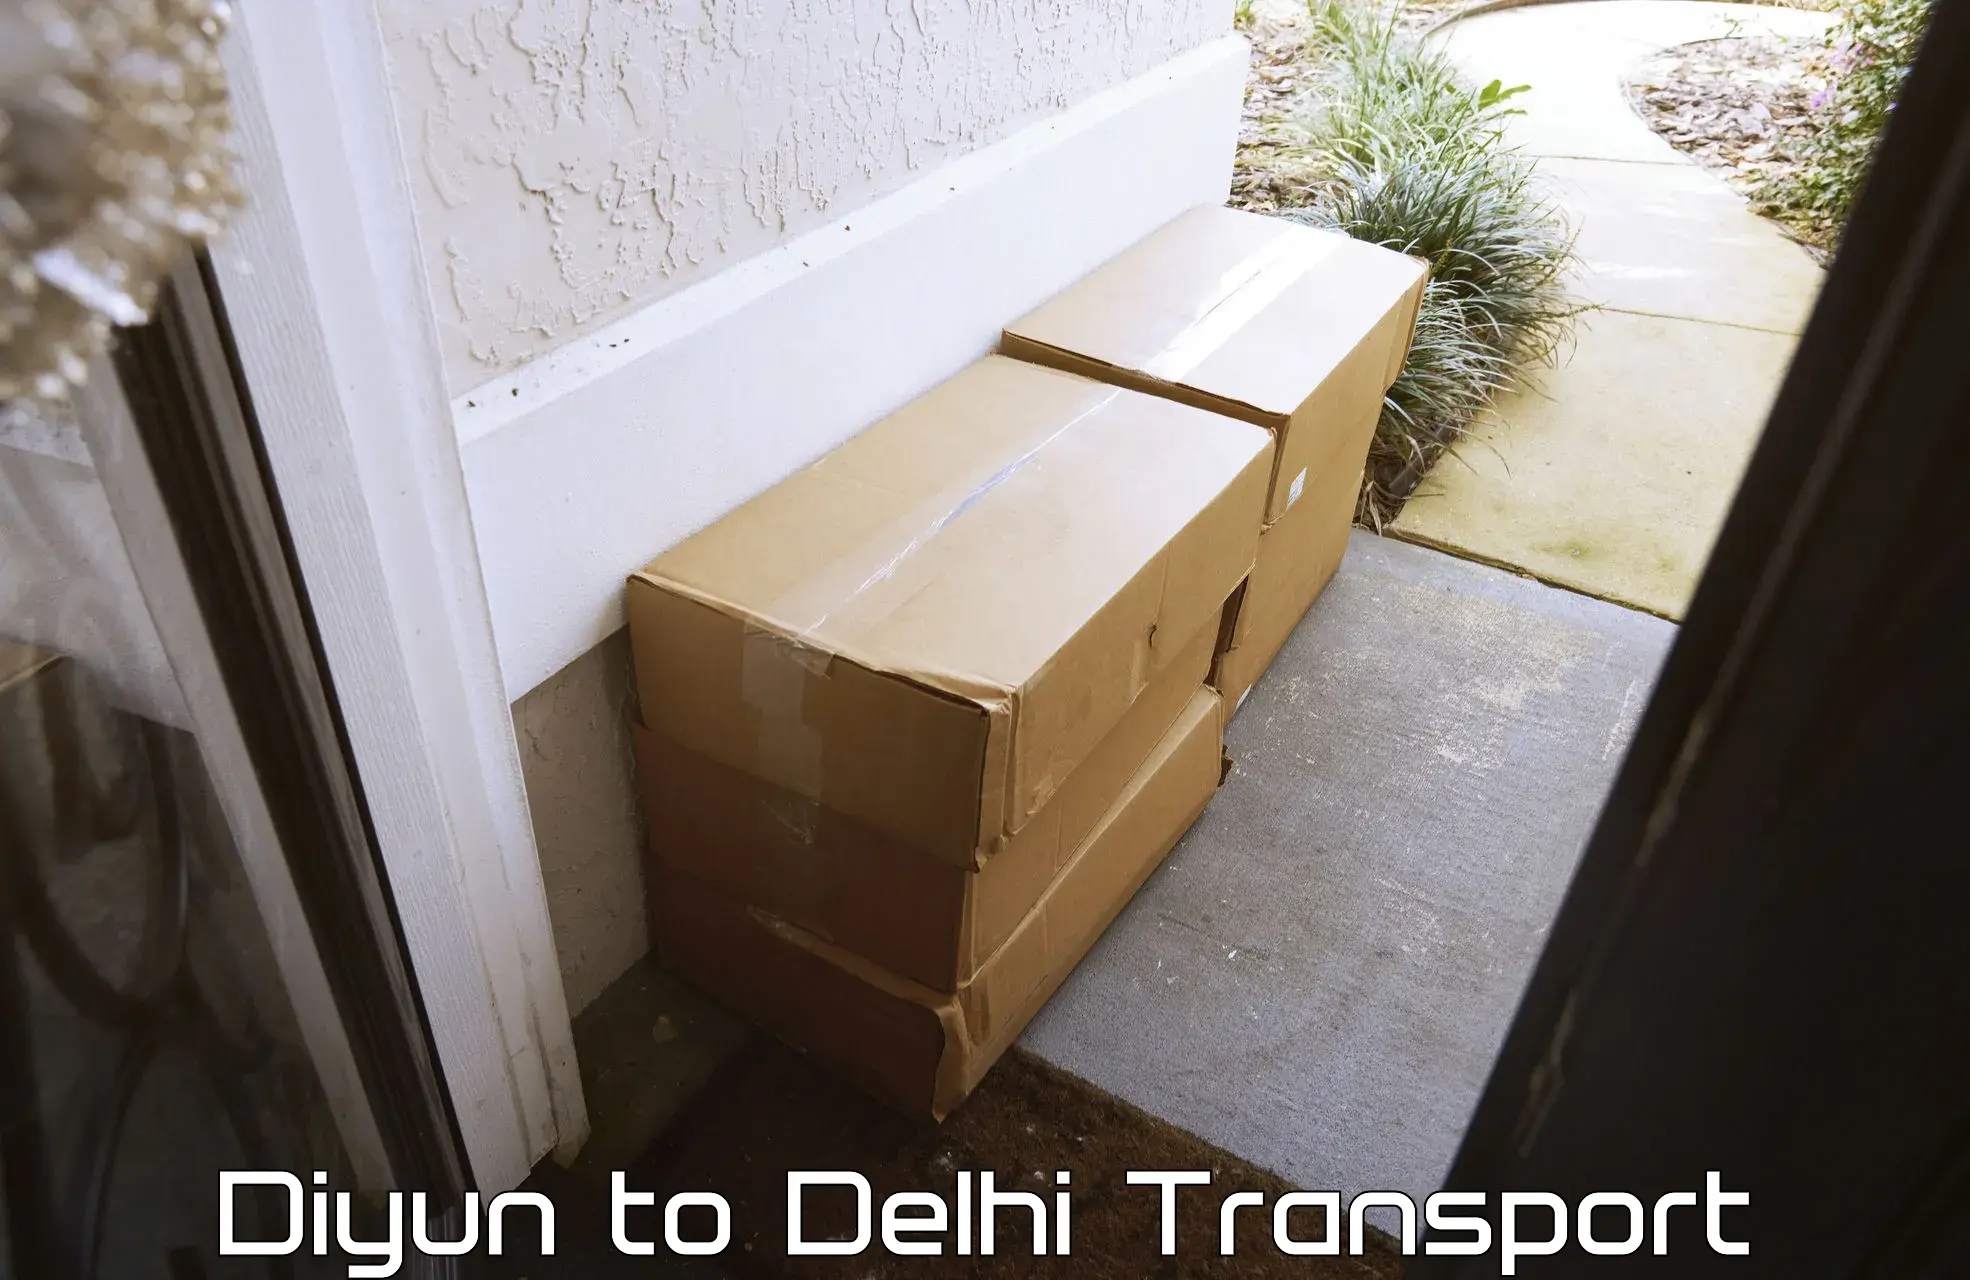 Container transportation services Diyun to Sarojini Nagar